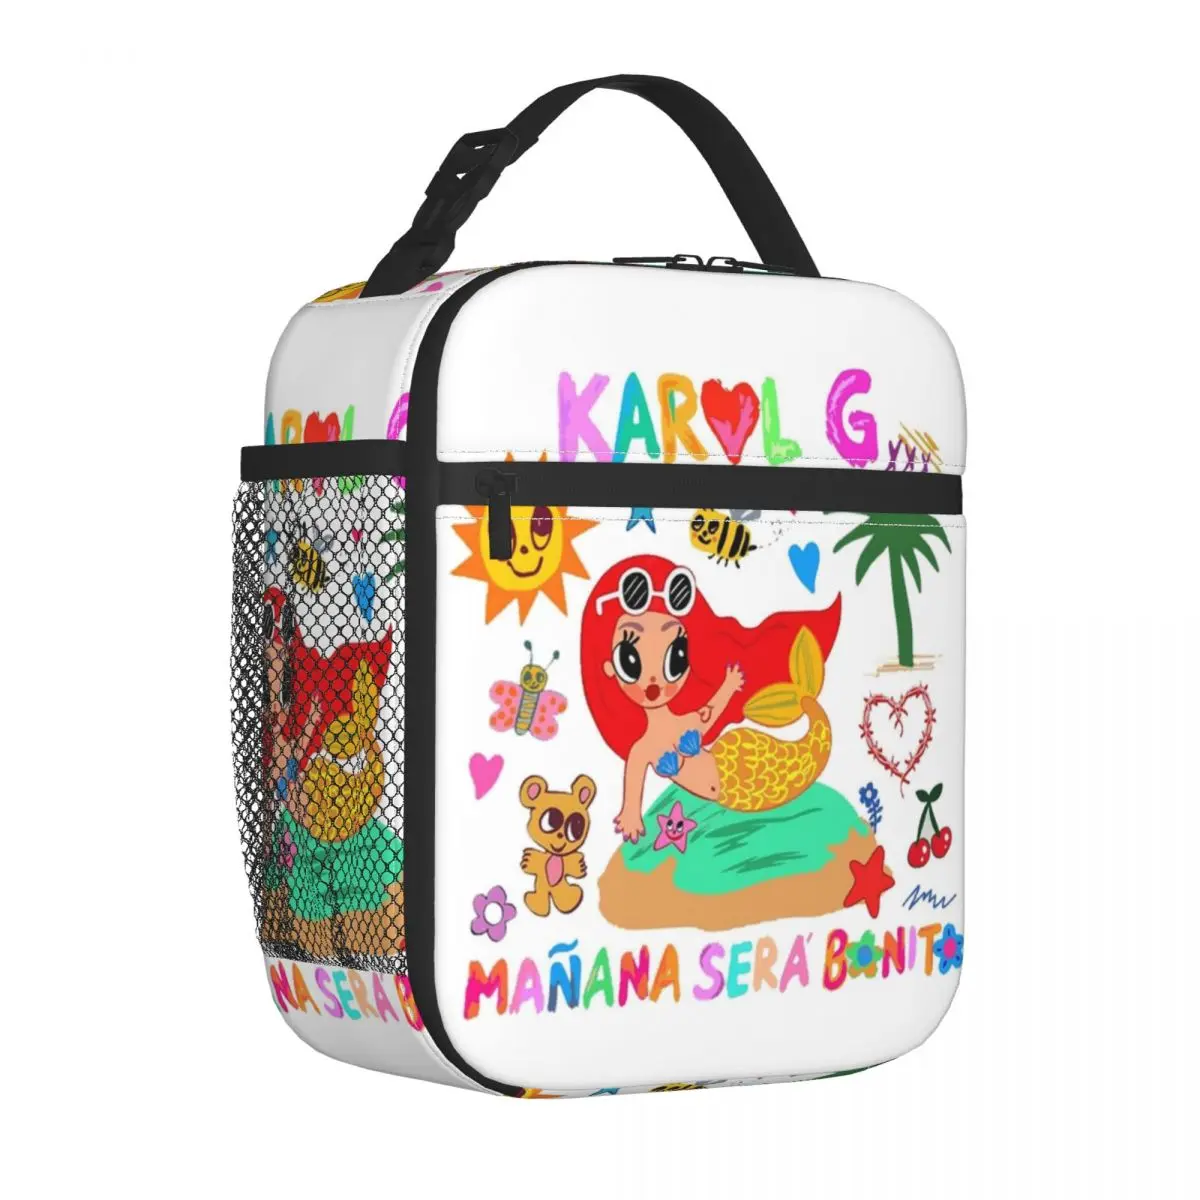 Manana Sera Bonito, вдохновленная Karol G, изолированная сумка для ланча, термосумка, контейнер для ланча, большая сумка, ланч-бокс, сумки для хранения продуктов, работа